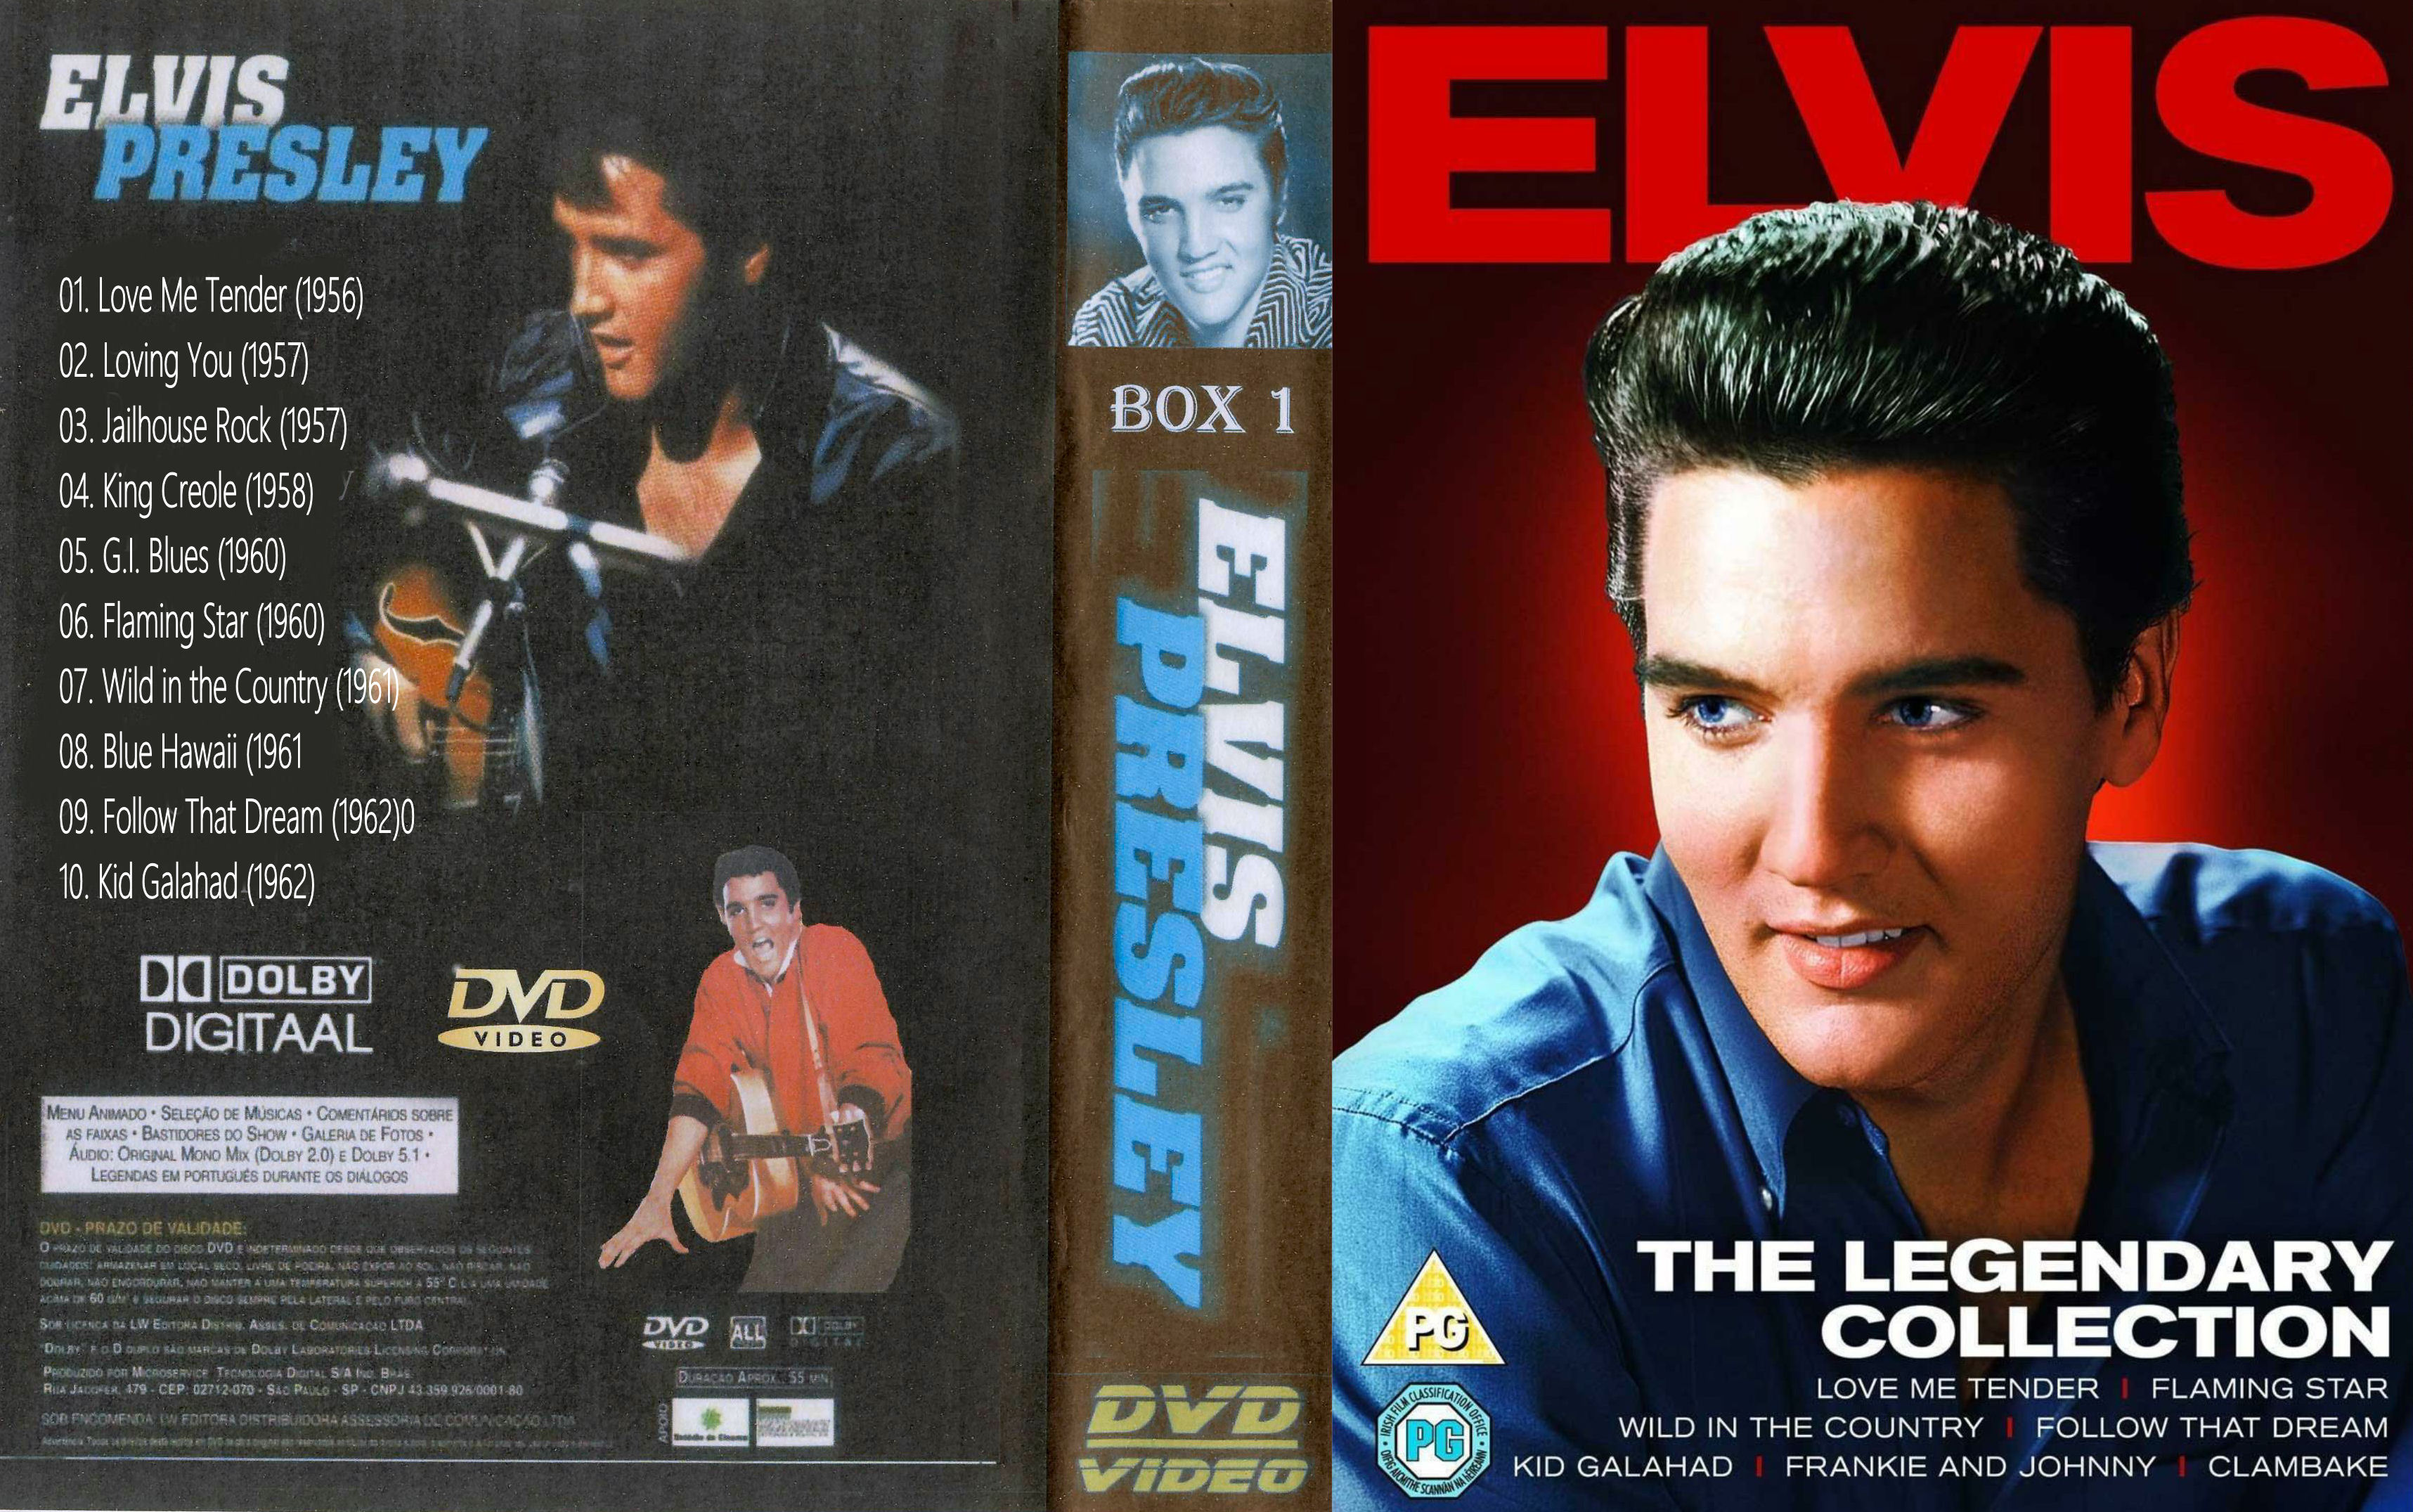 Elvis Presley Collectie ( 04 - King Creole ) DvD 4 van 31